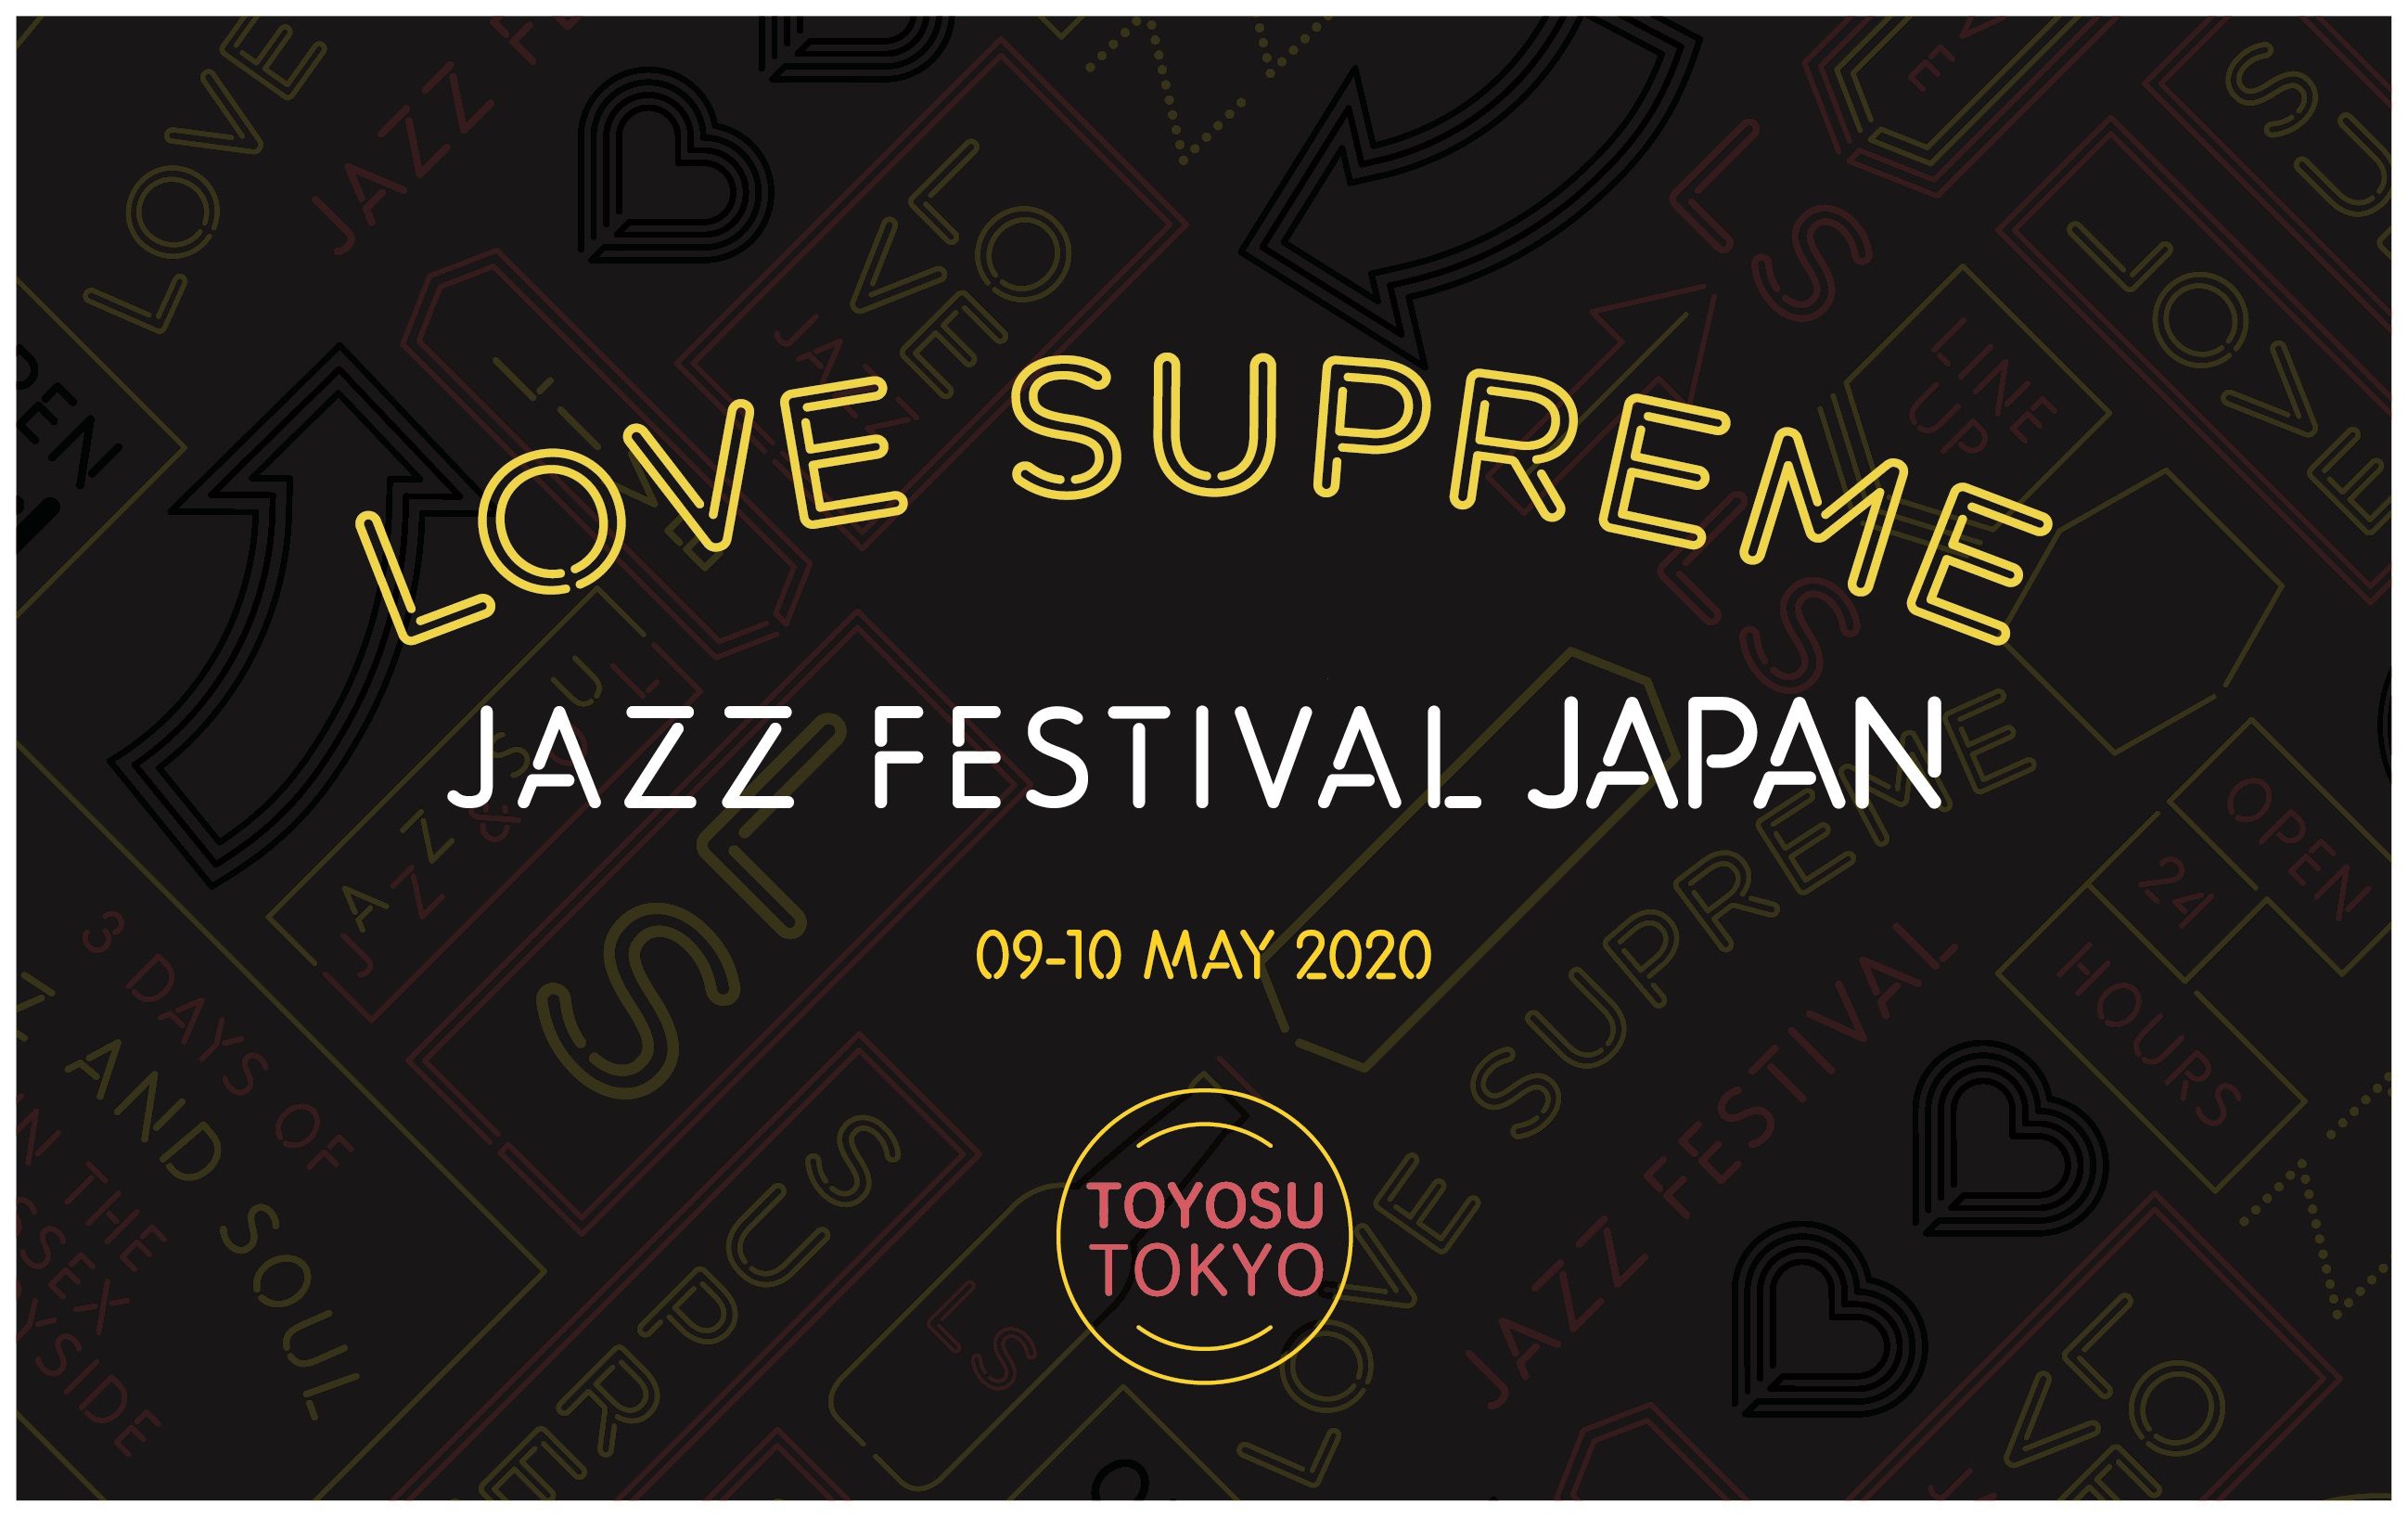 ヨーロッパ最大規模の野外ジャズフェス「LOVE SUPREME JAZZ FESTIVAL」日本上陸